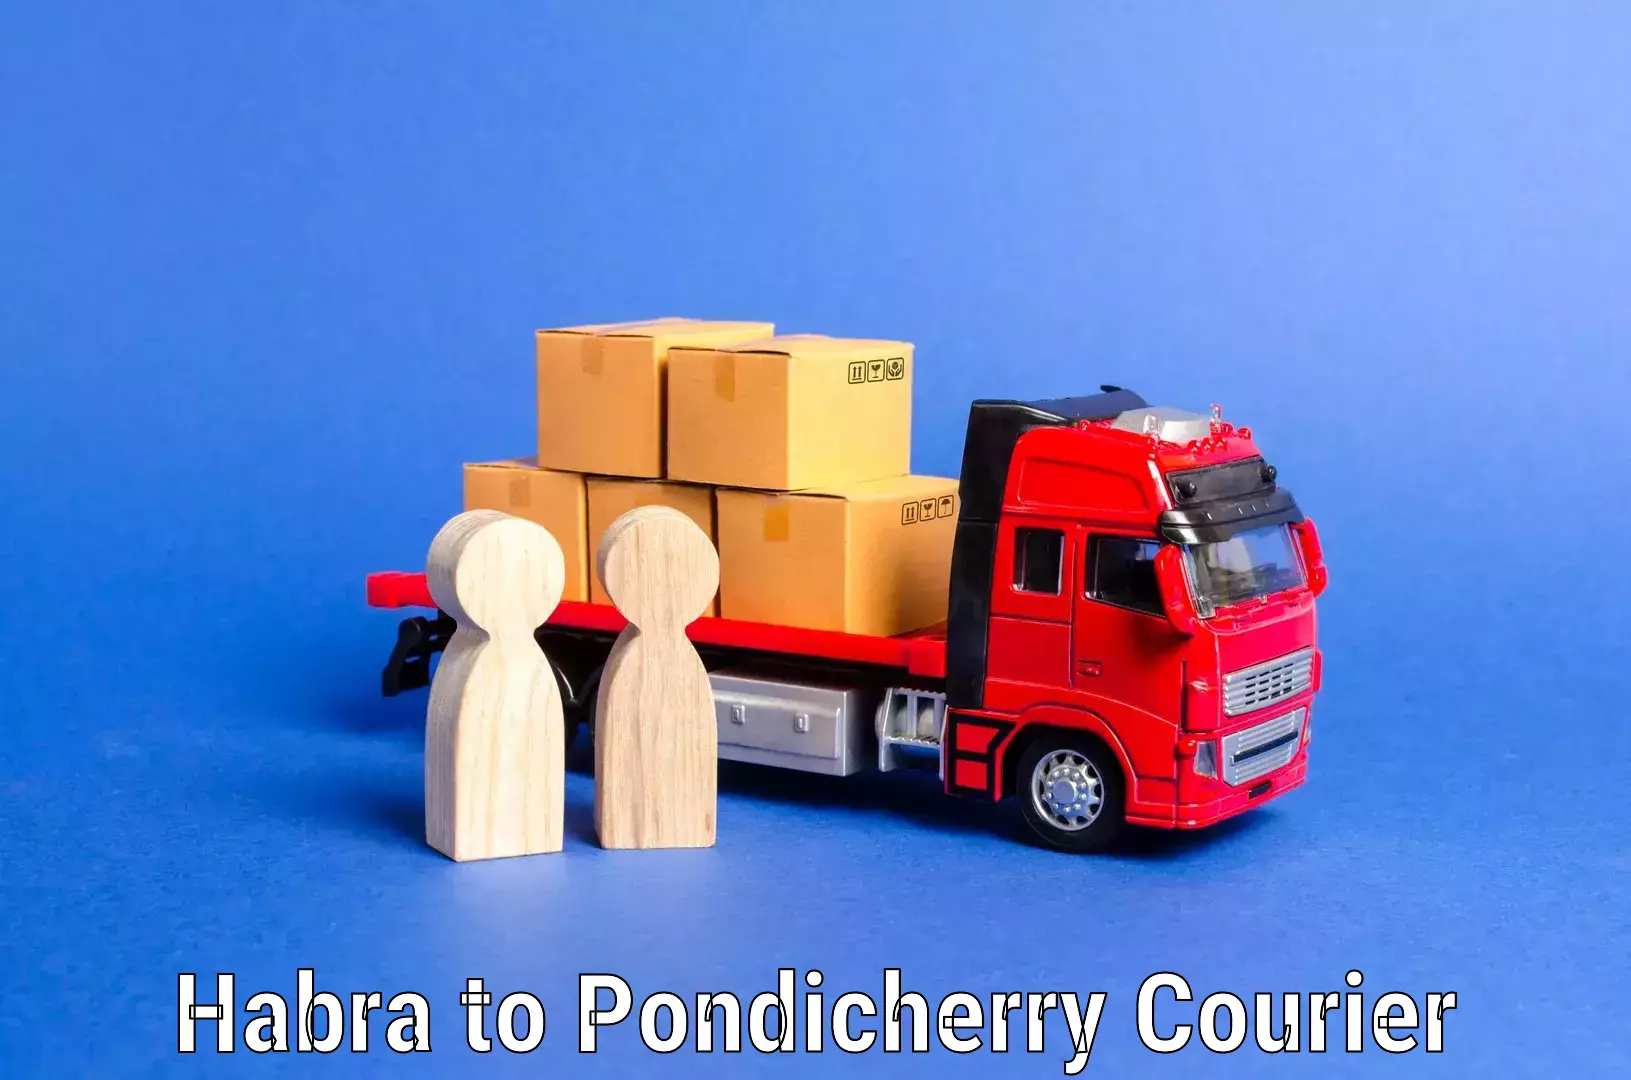 Furniture transport service Habra to Pondicherry